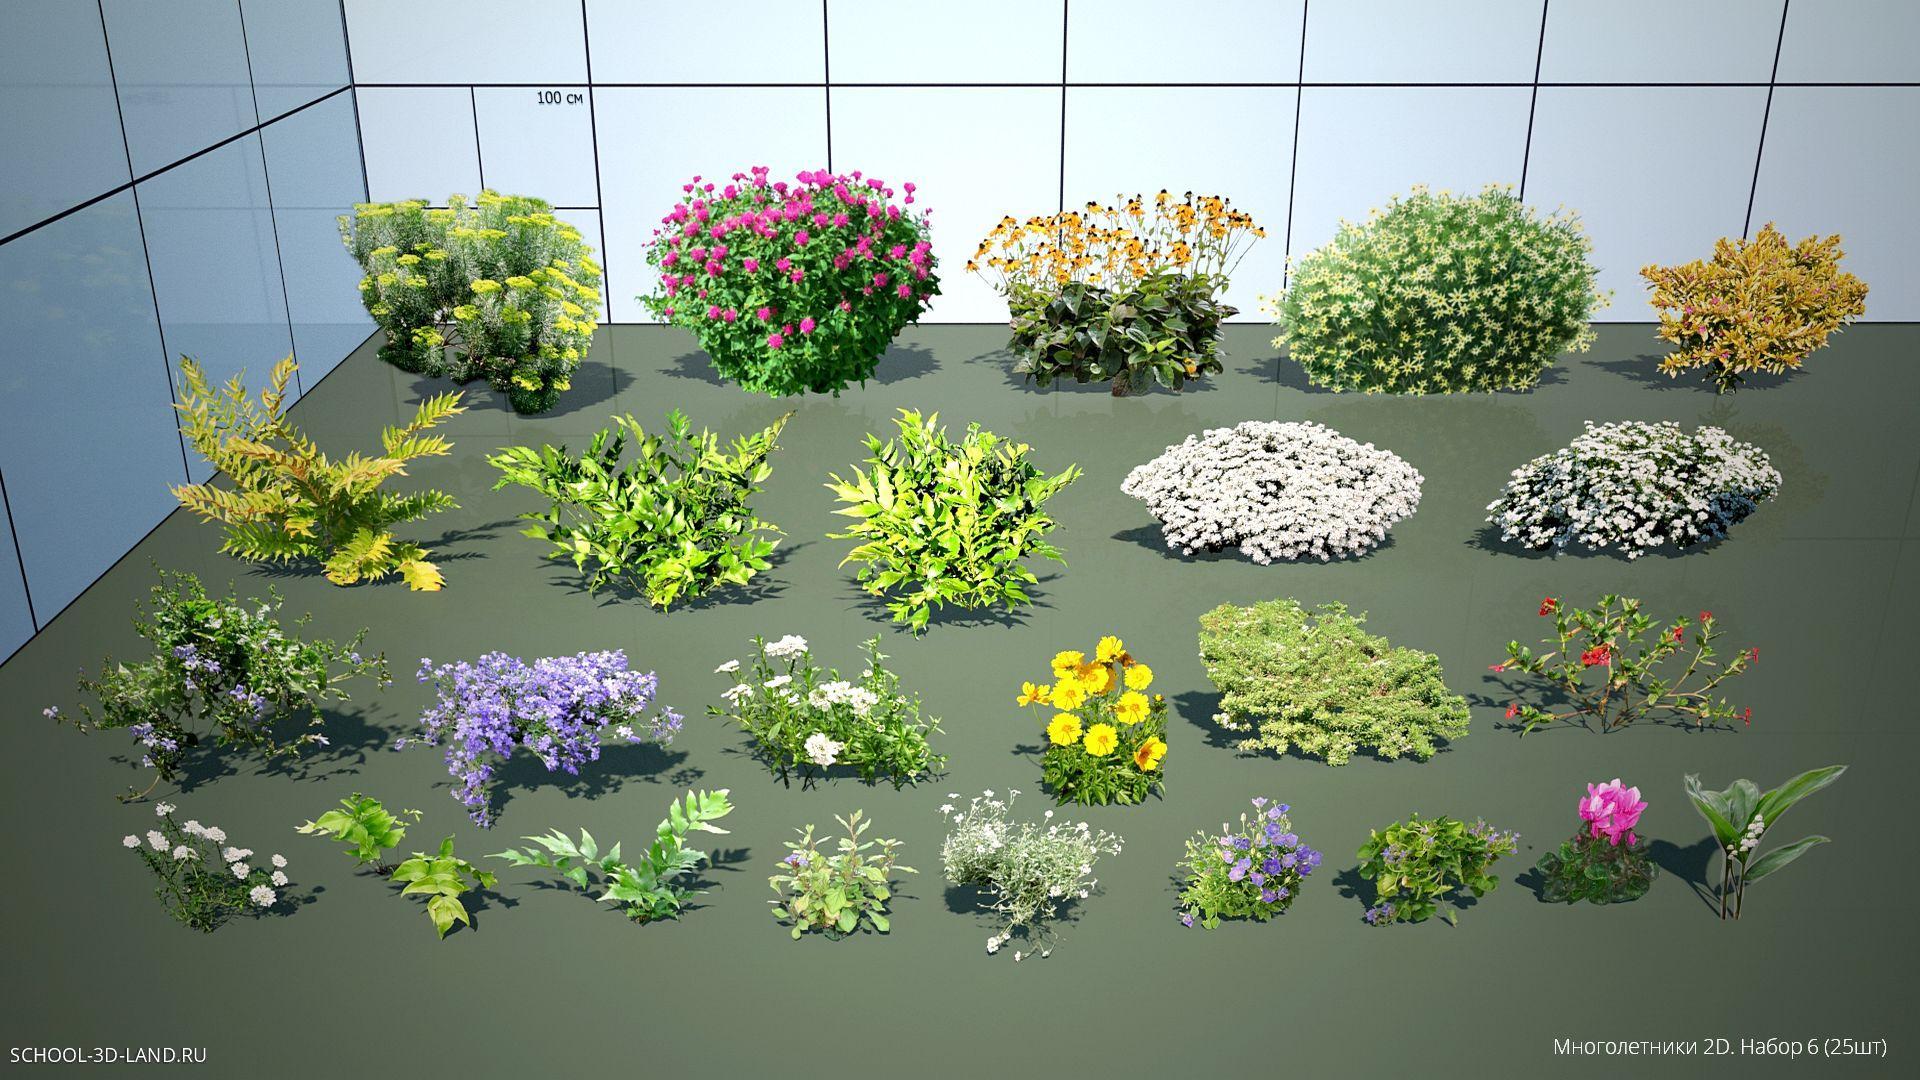 Perennials 2D. Set 6 (25pcs)